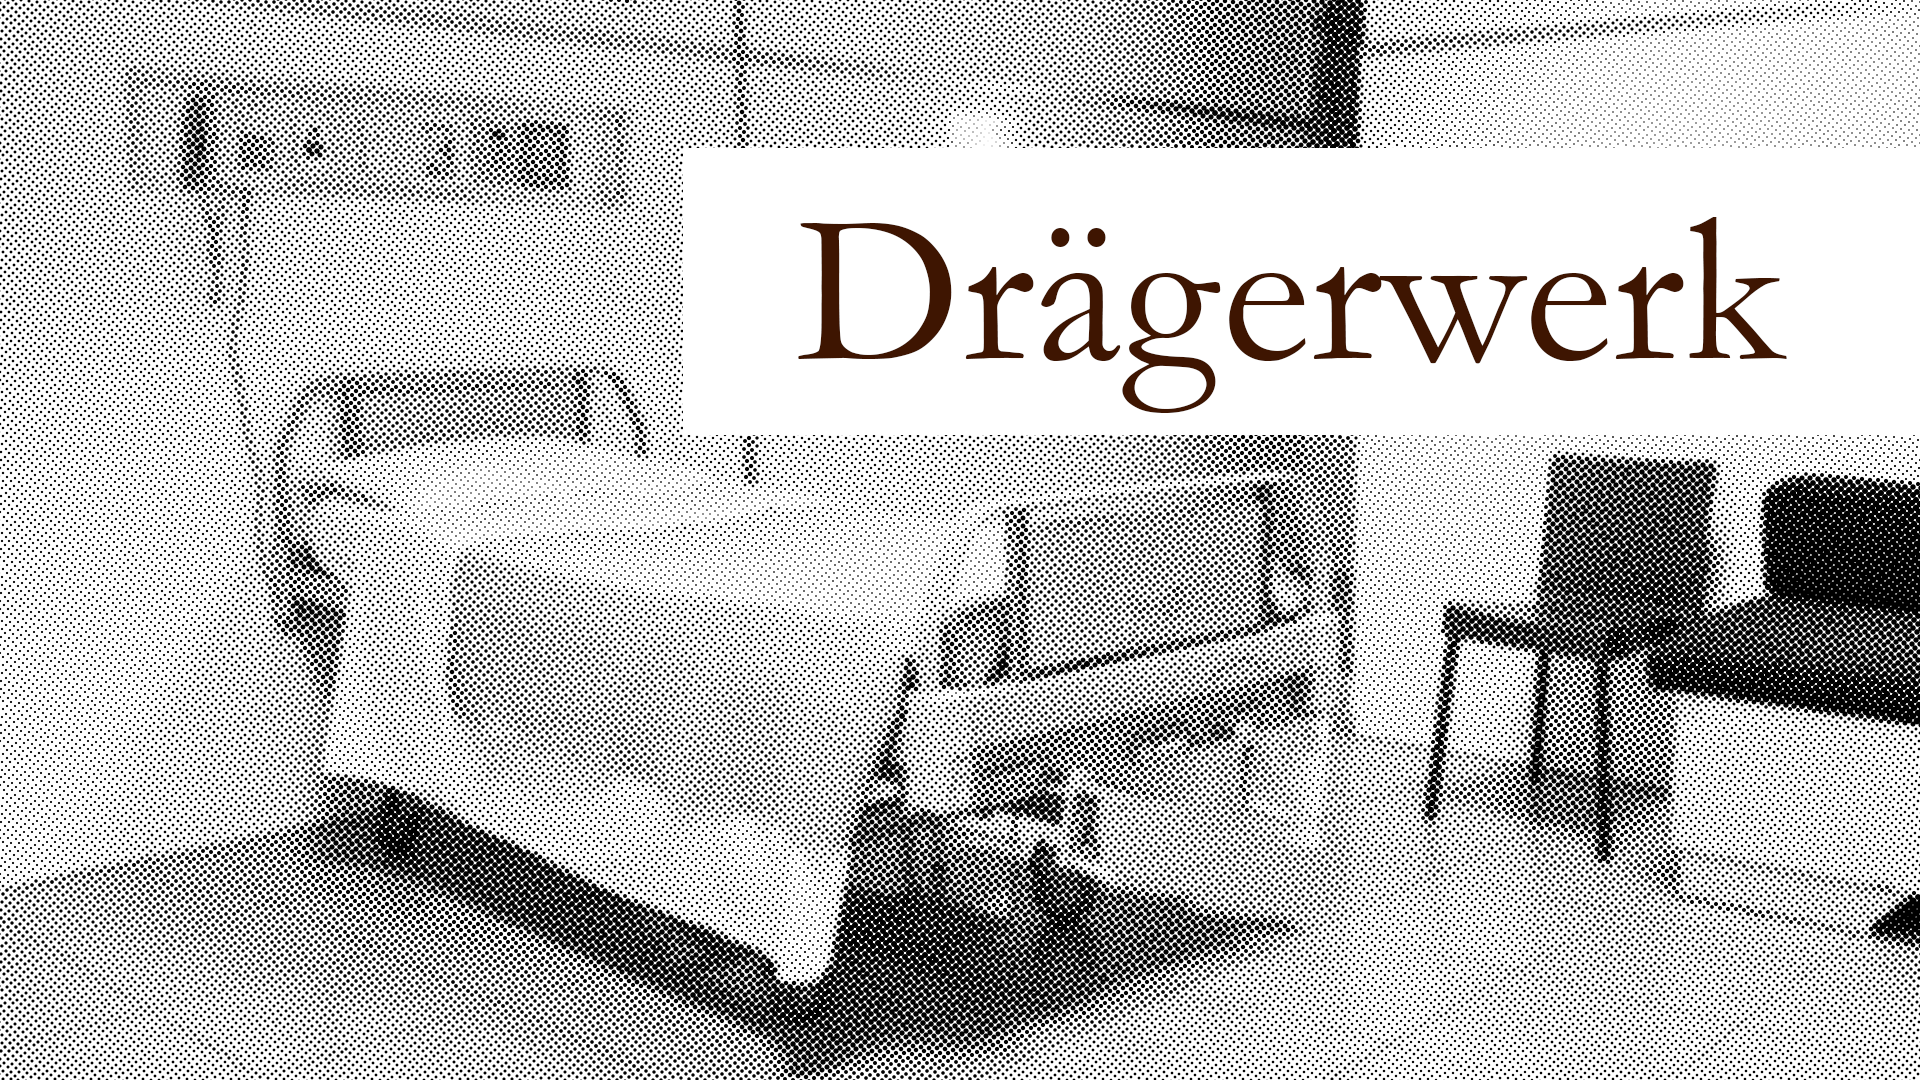 The best performer in the medical equipment field: Drägerwerk